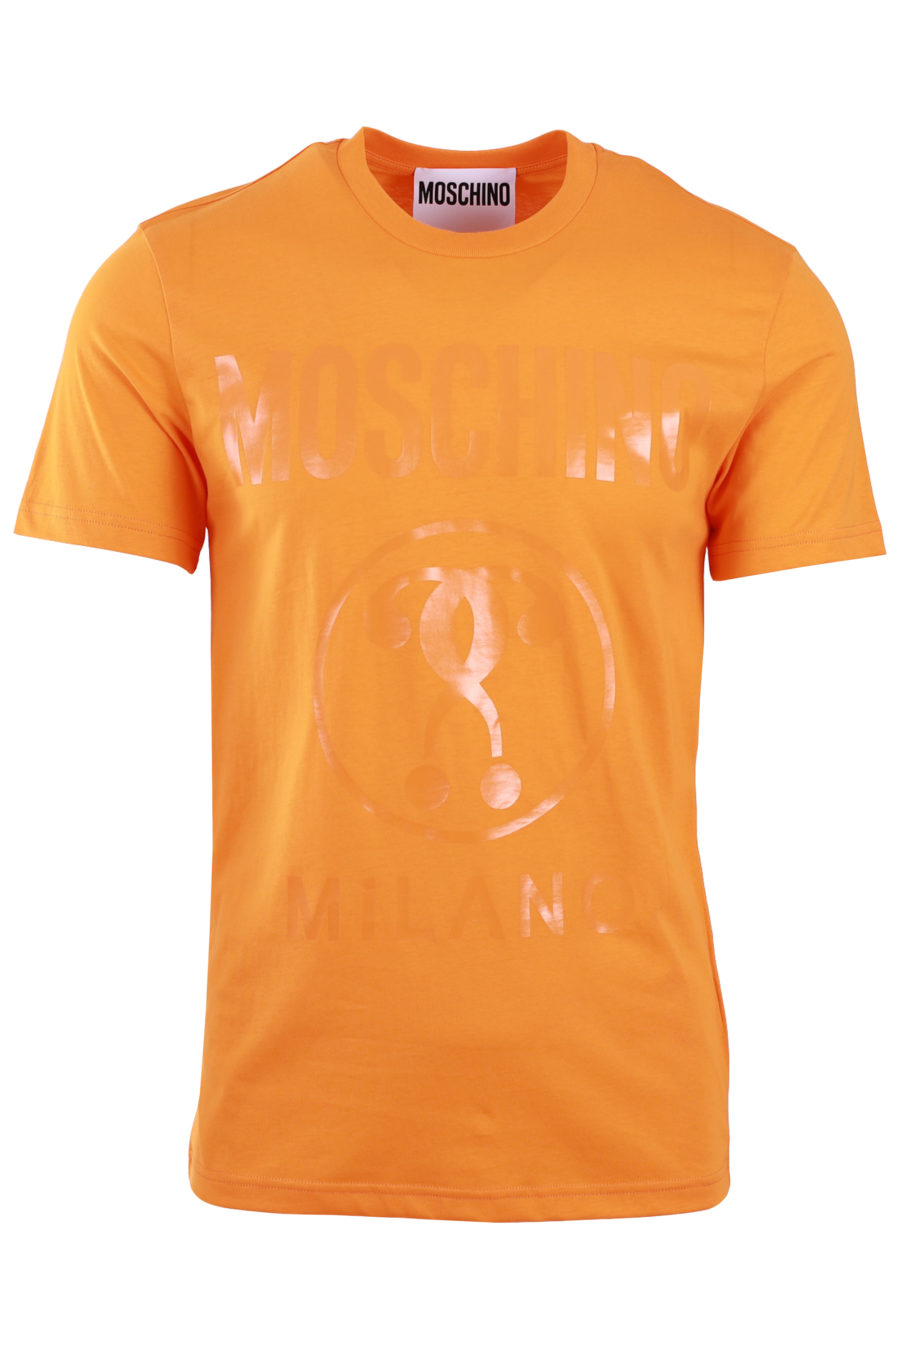 Camiseta naranja con logo doble pregunta - 3505cfbdba7a2726fba7305e5465e25e974de2b5